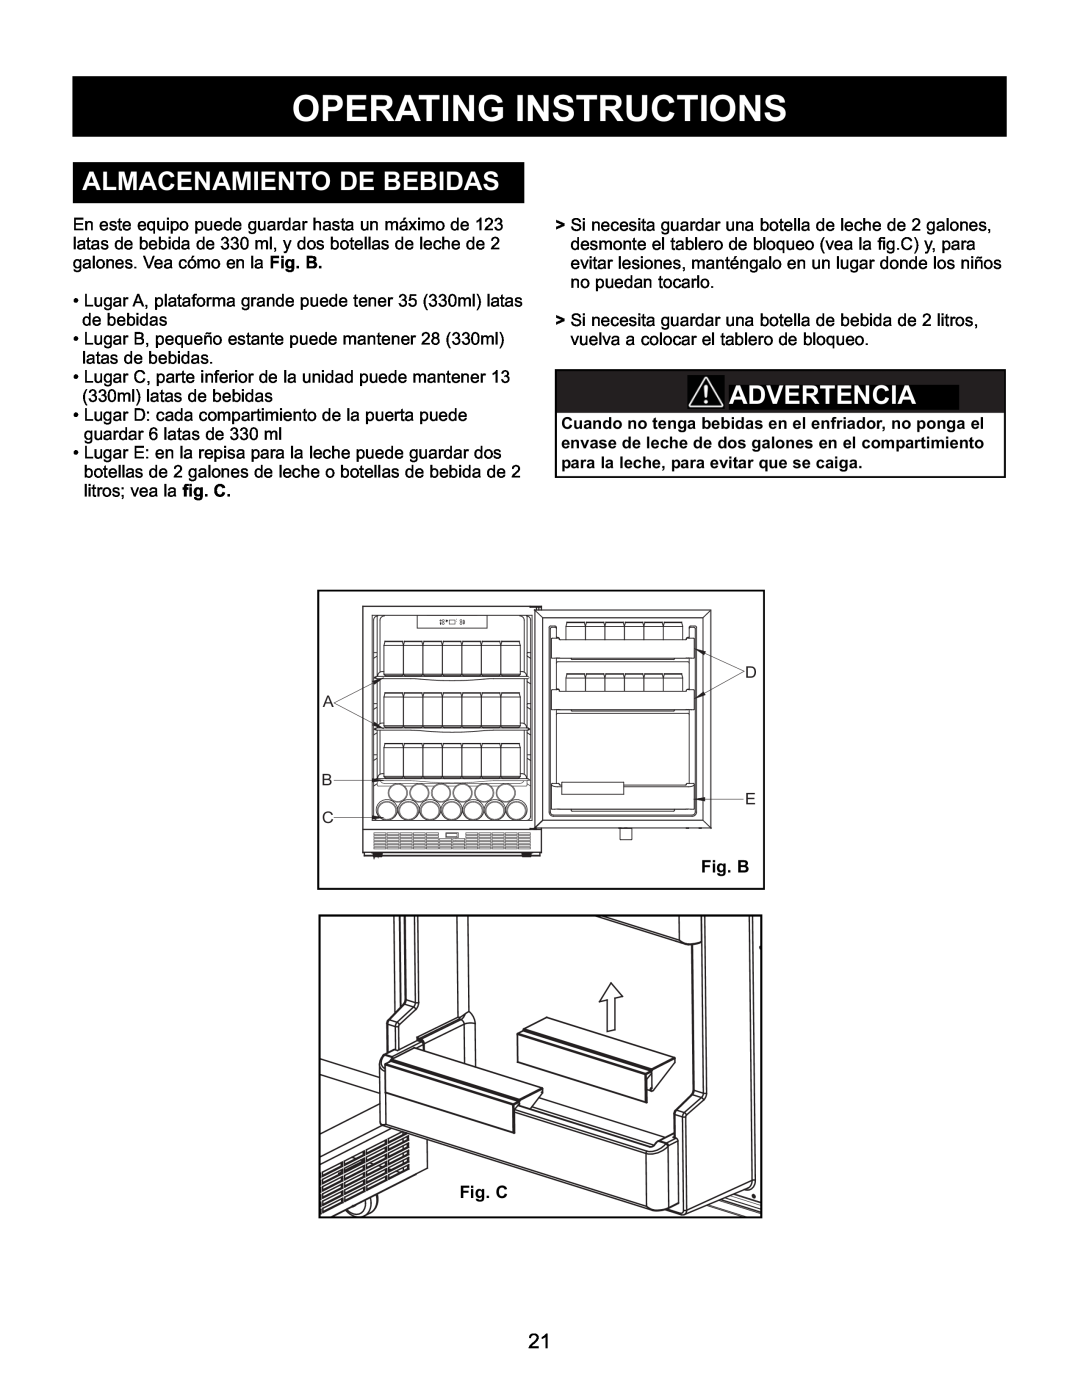 Danby DAR154BLSST manual Almacenamiento De Bebidas, Advertenciawarning, Operating Instructions, Fig. B, Fig. C 